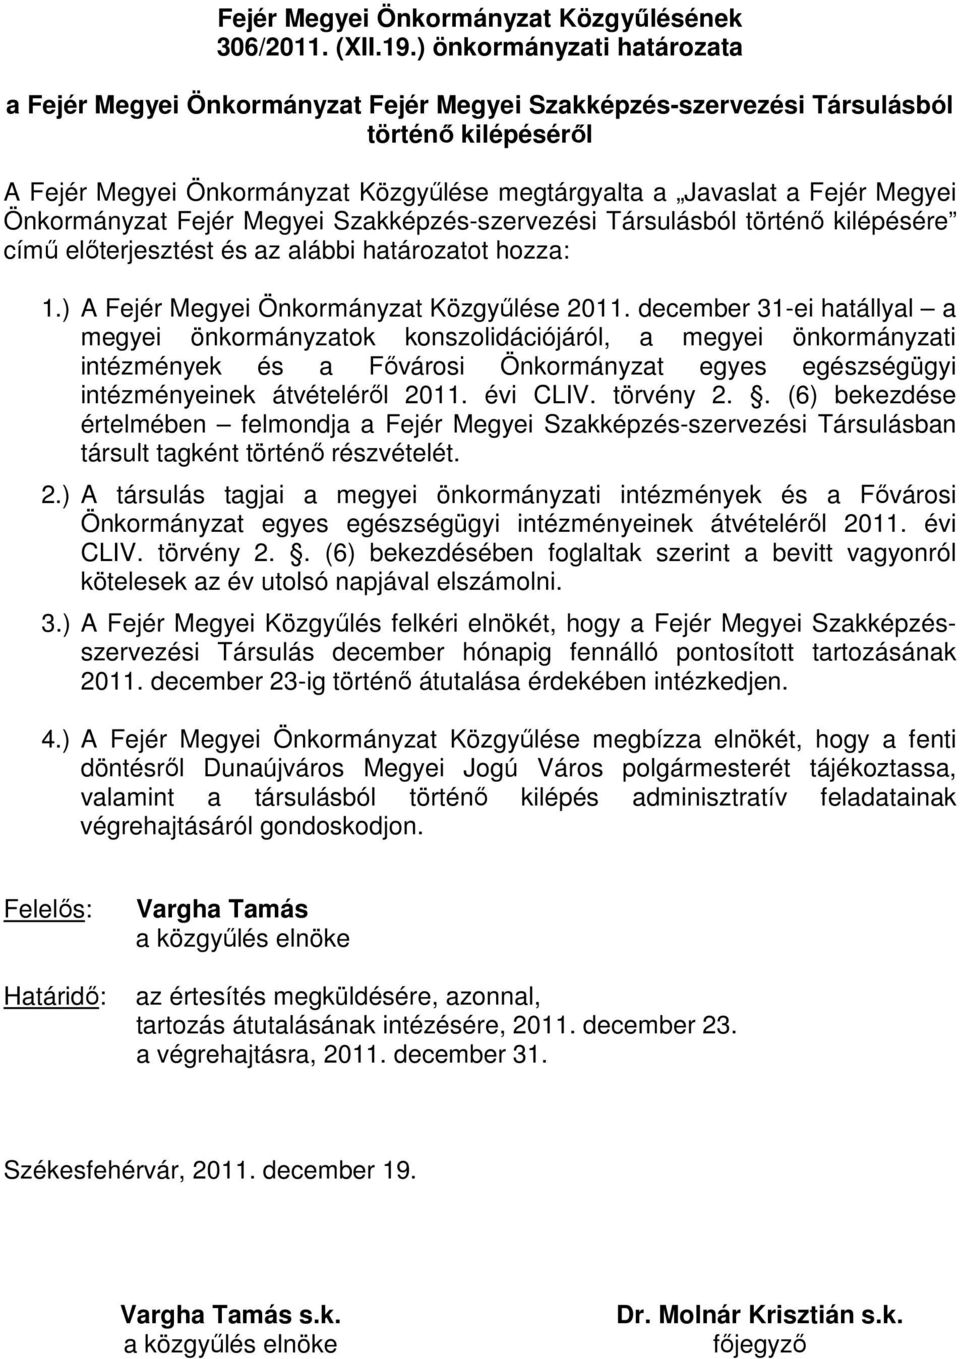 Önkormányzat Fejér Megyei Szakképzés-szervezési Társulásból történı kilépésére címő elıterjesztést és az alábbi határozatot hozza: 1.) A Fejér Megyei Önkormányzat Közgyőlése 2011.